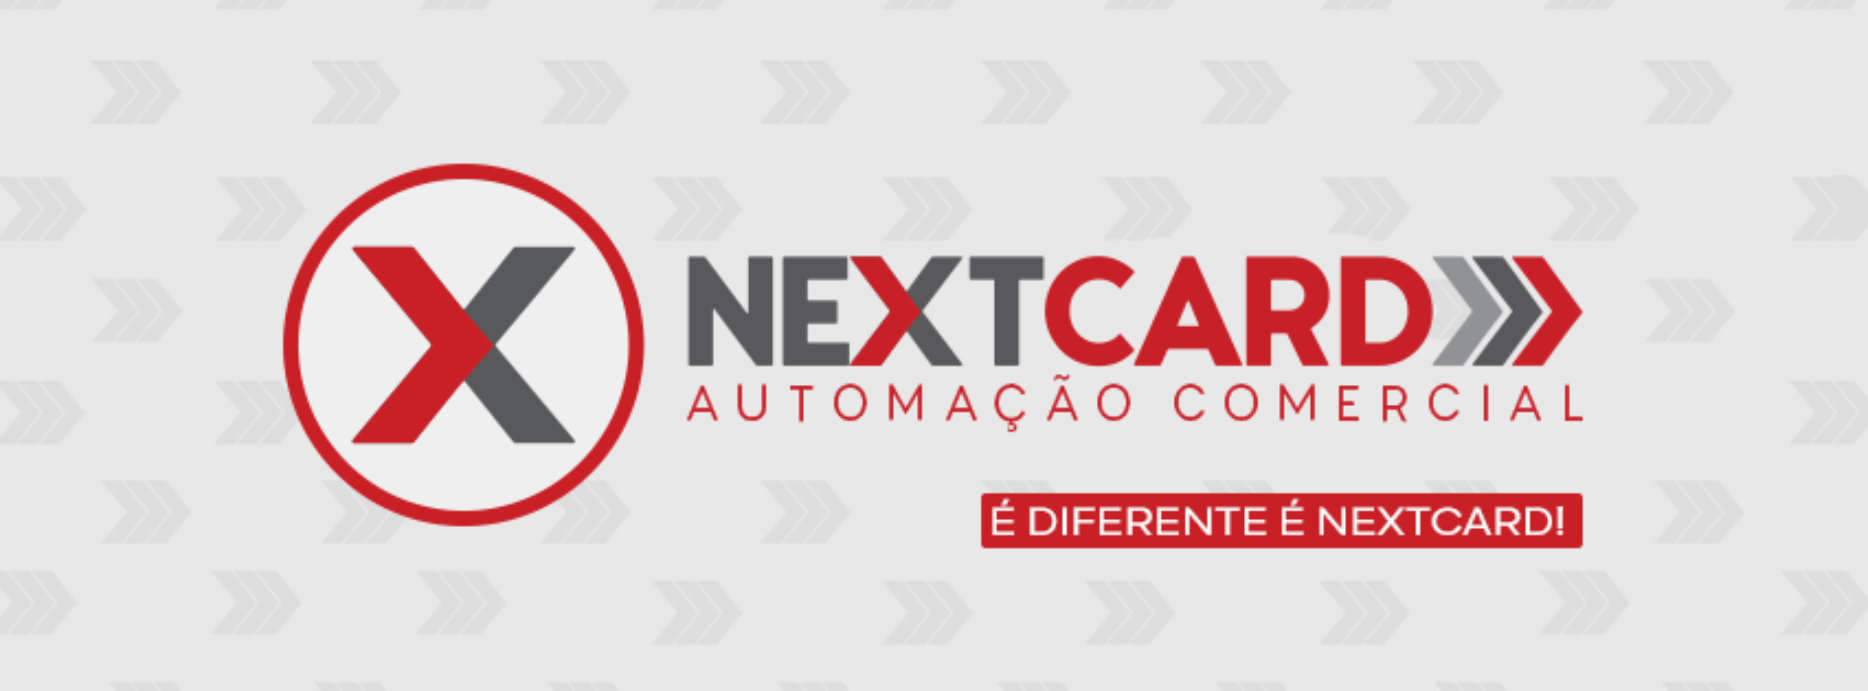 Nextcard Automação Comercial      Fones: (41) 3732-0275 / (41) 99550-7759